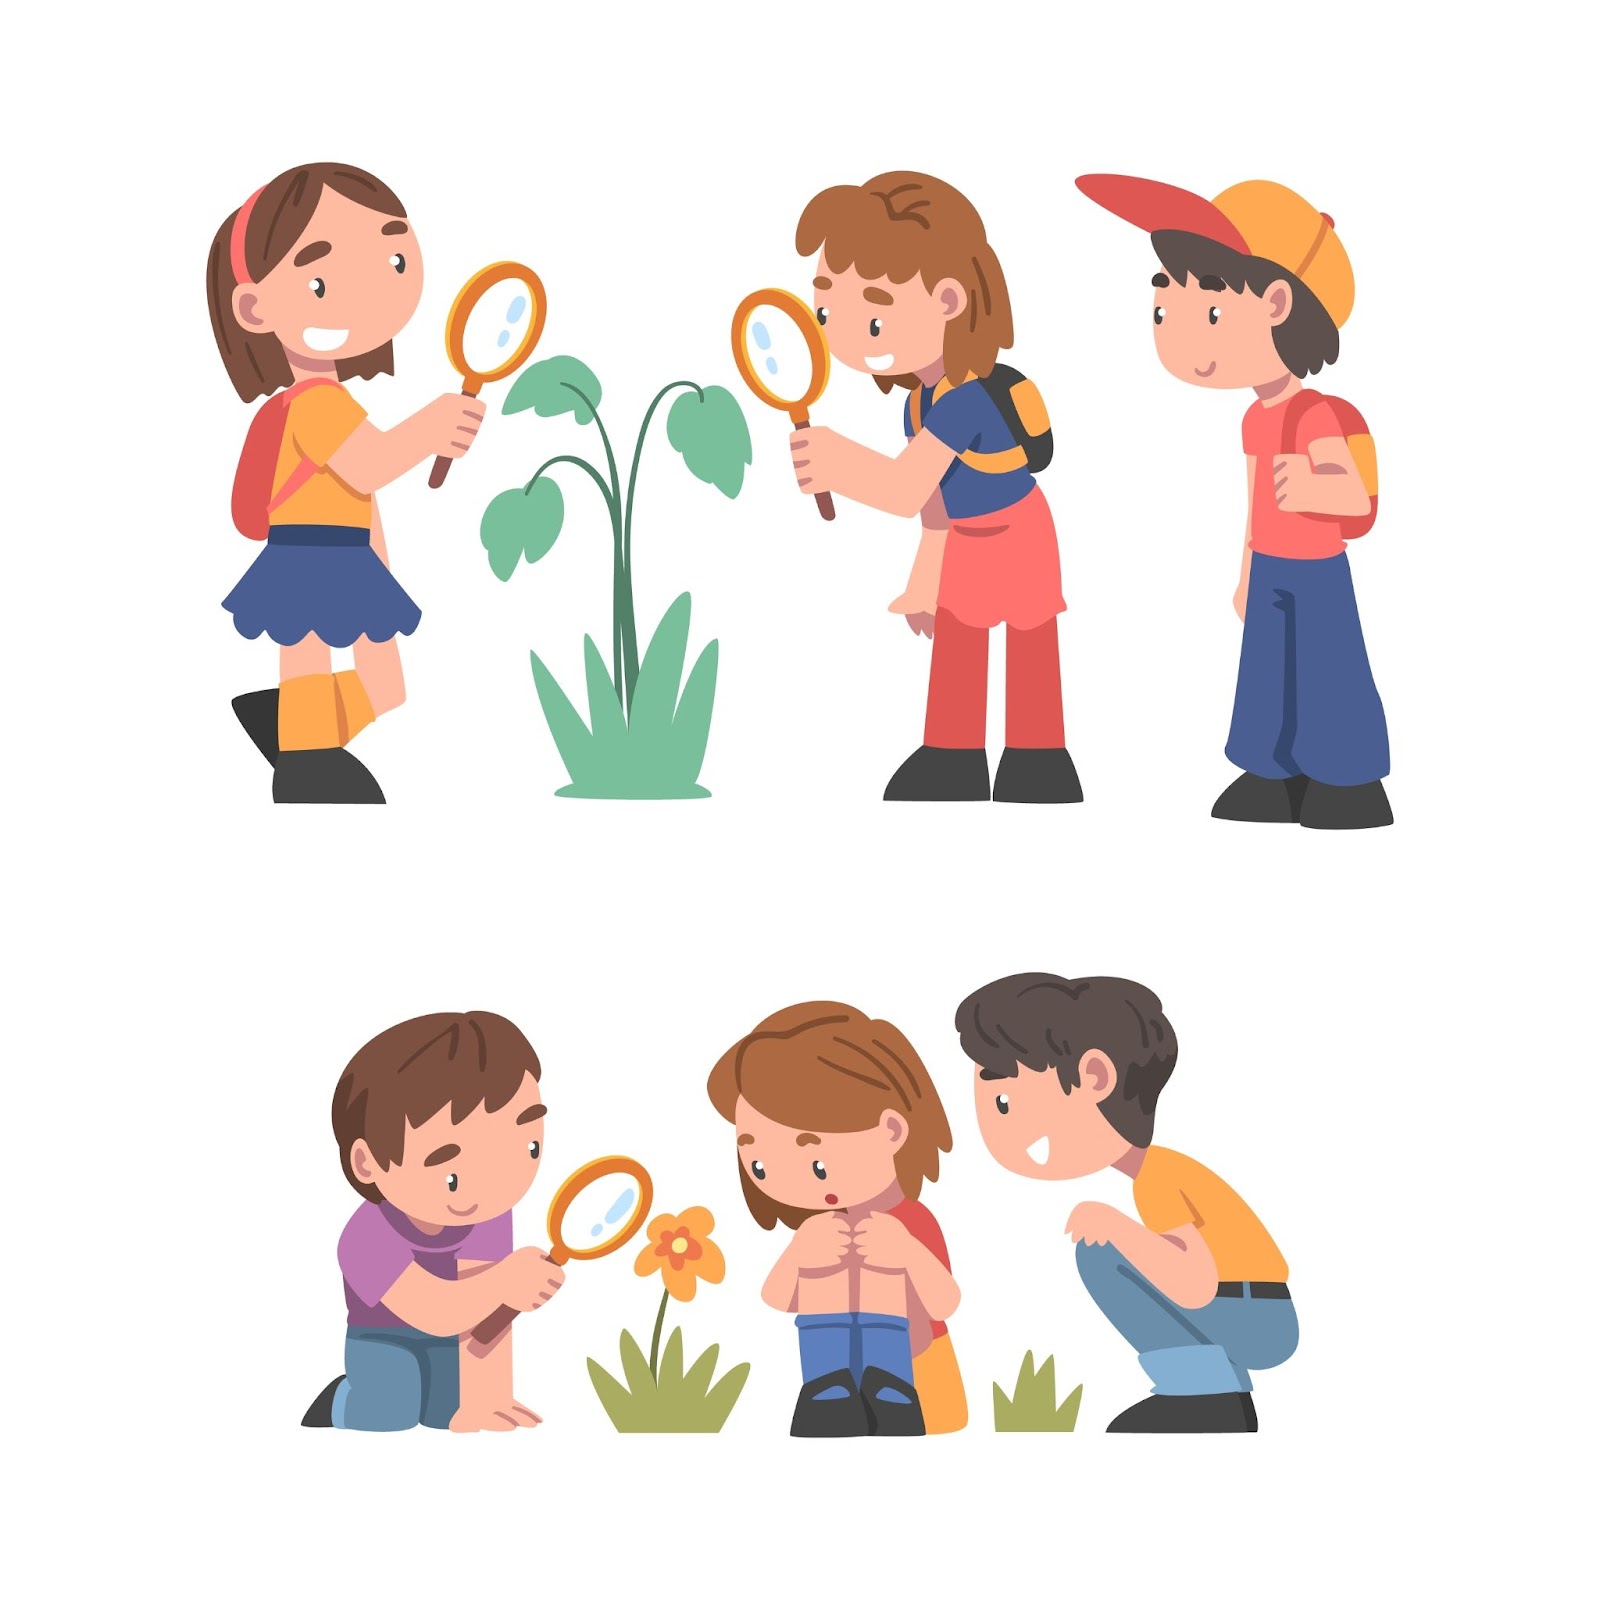 Ragazzo e ragazza curiosi vicino a un fiore in fiore con lente d'ingrandimento che studiano la pianta ed esplorano l'ambiente, illustrazione